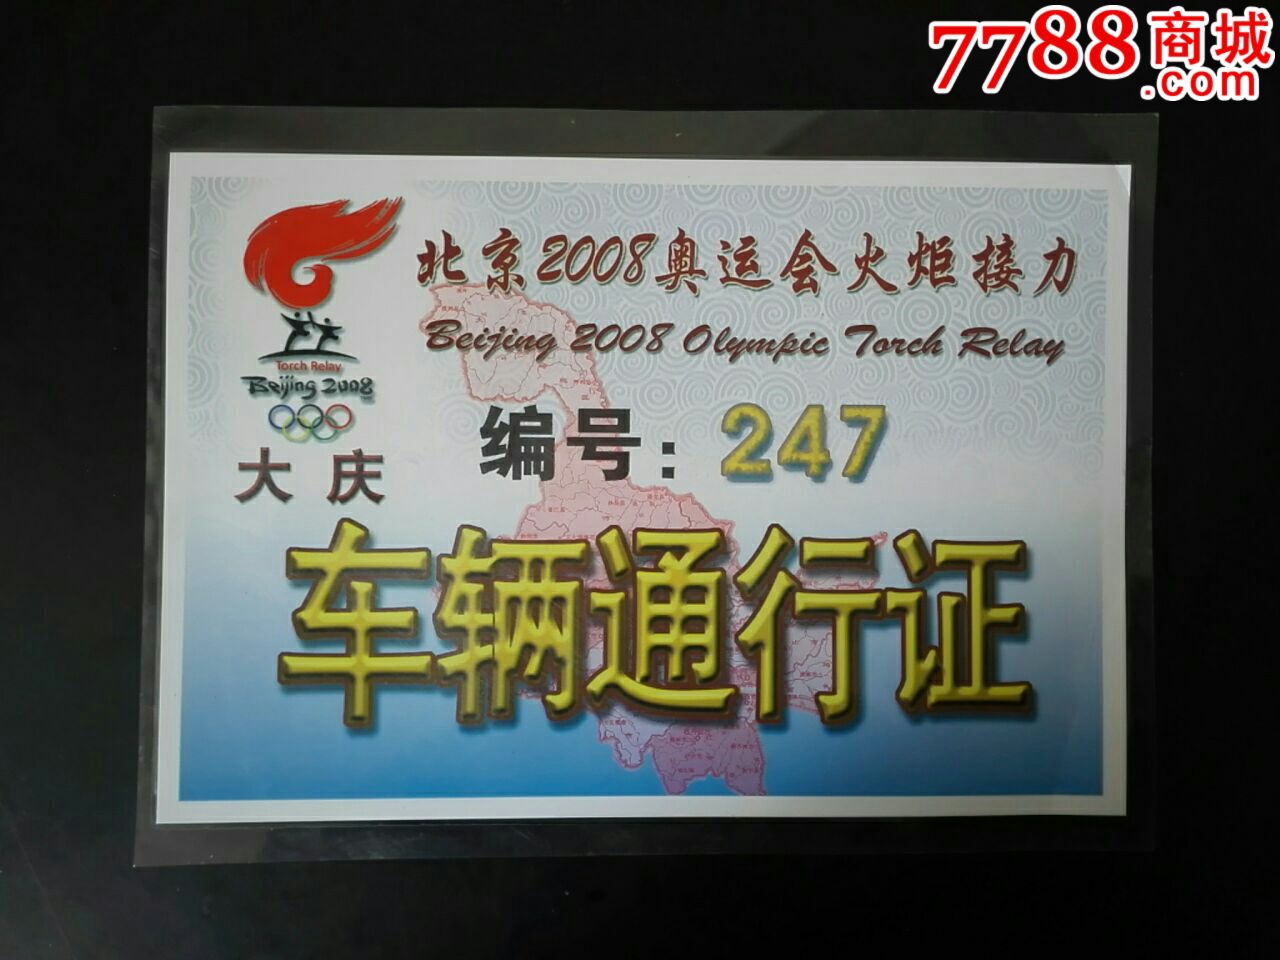 北京2008年奥运会火炬接力(大庆站)车辆通行证